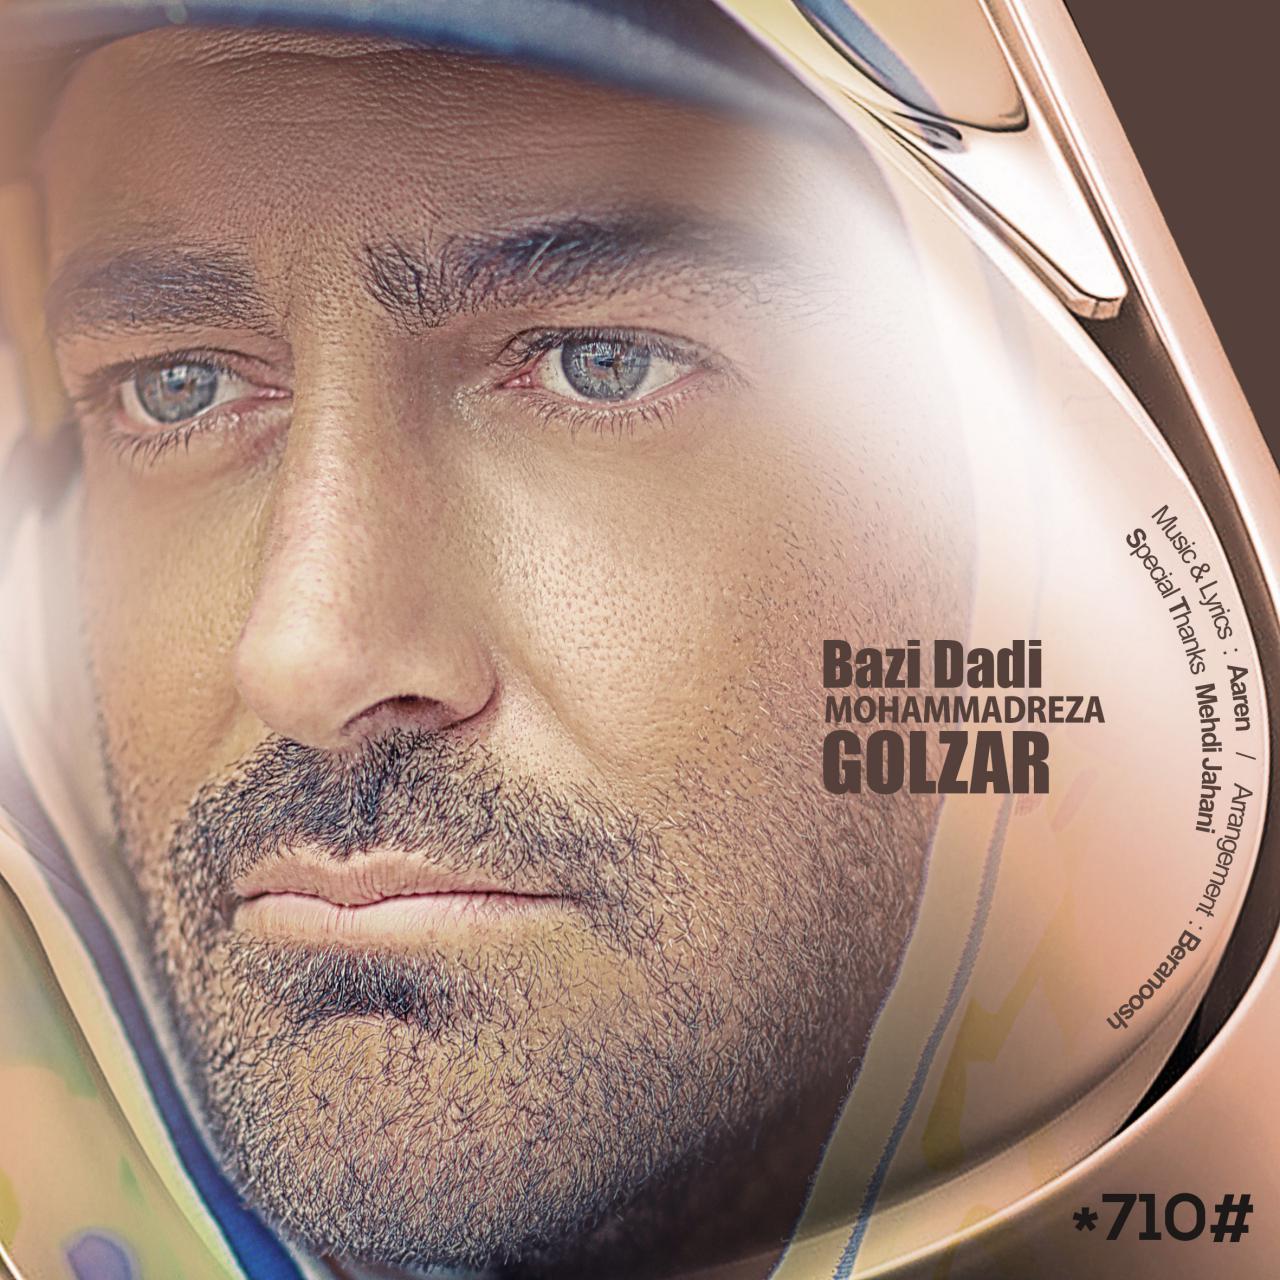  دانلود آهنگ جدید محمدرضا گلزار - بازی دادی | Download New Music By Mohammadreza Golzar - Bazi Dadi